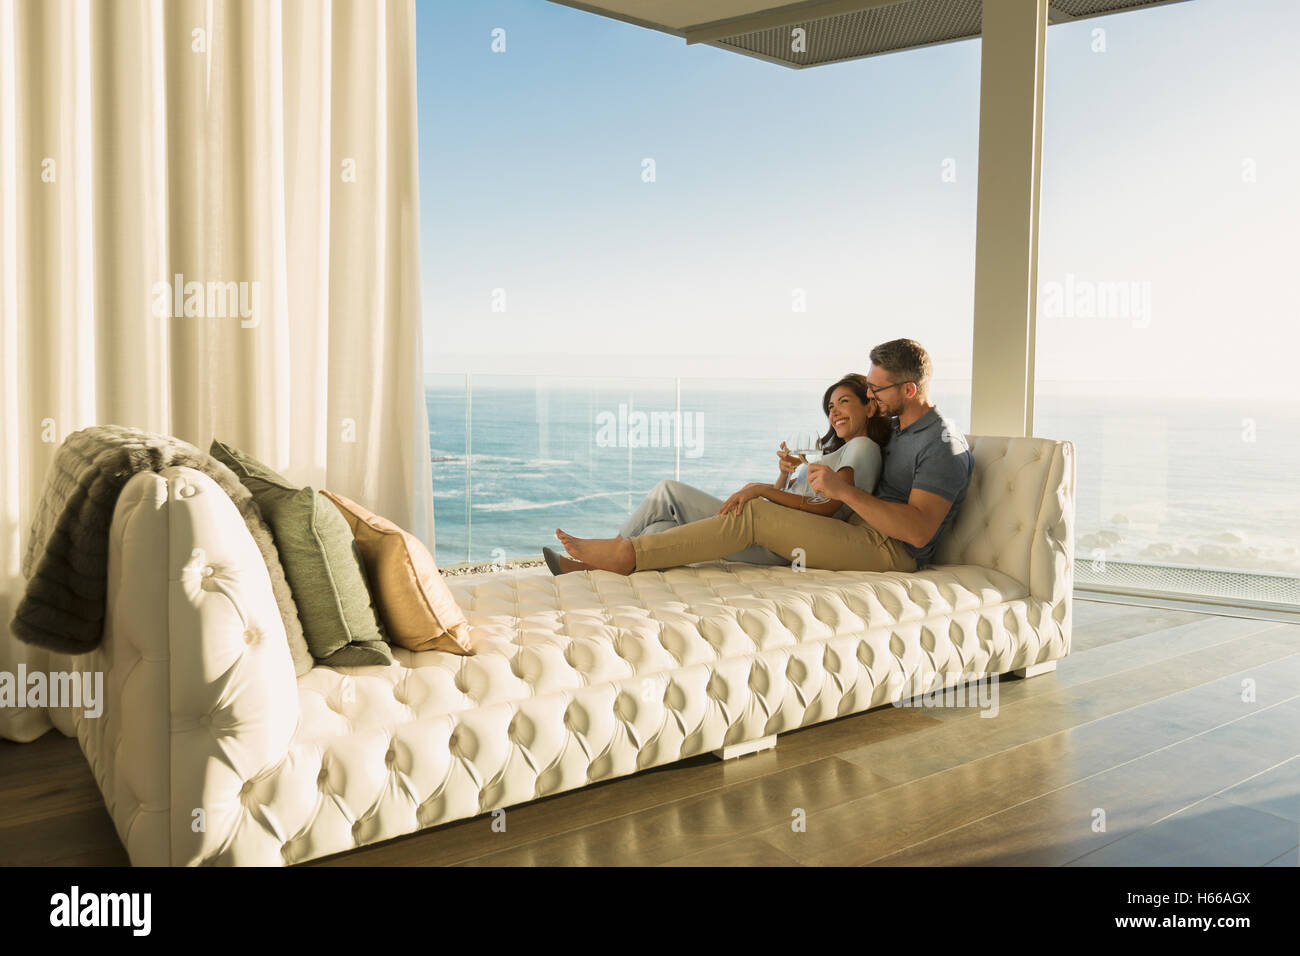 Affectionate couple boire du vin produit sur sur une chaise longue avec vue sur l'océan Banque D'Images